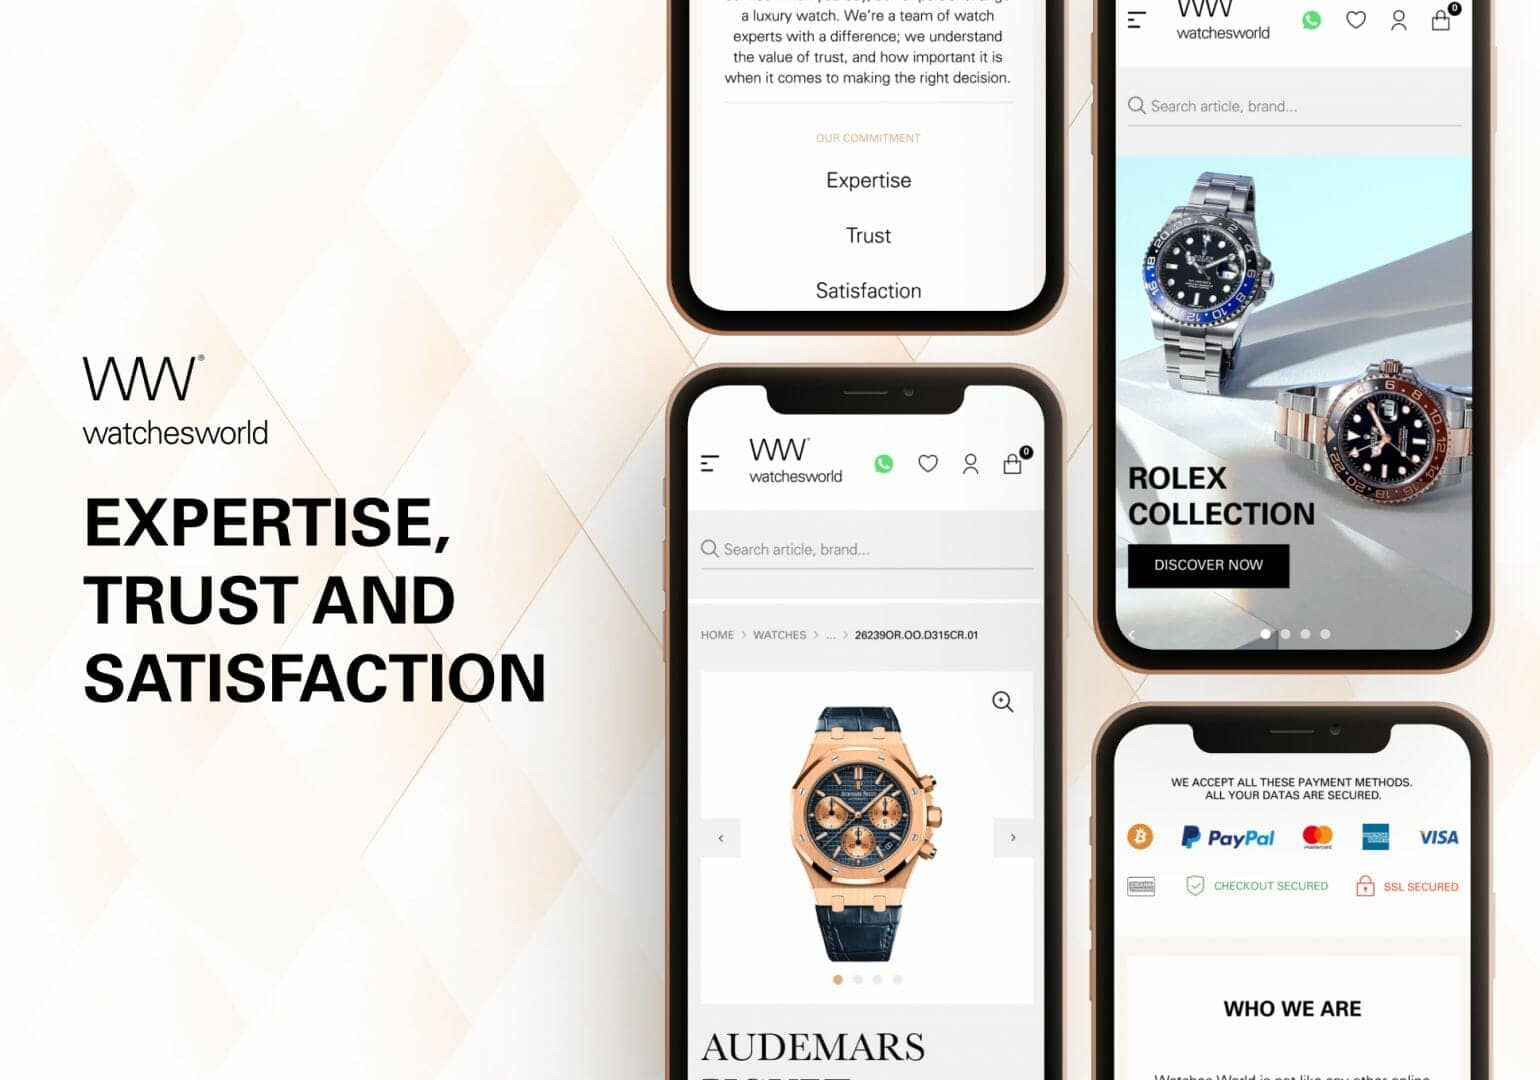 Le site Watches World espere changer la donne en matiere de ventes sur internet afin de donner un nouveau souffle au marché des montres de luxe en seconde main.